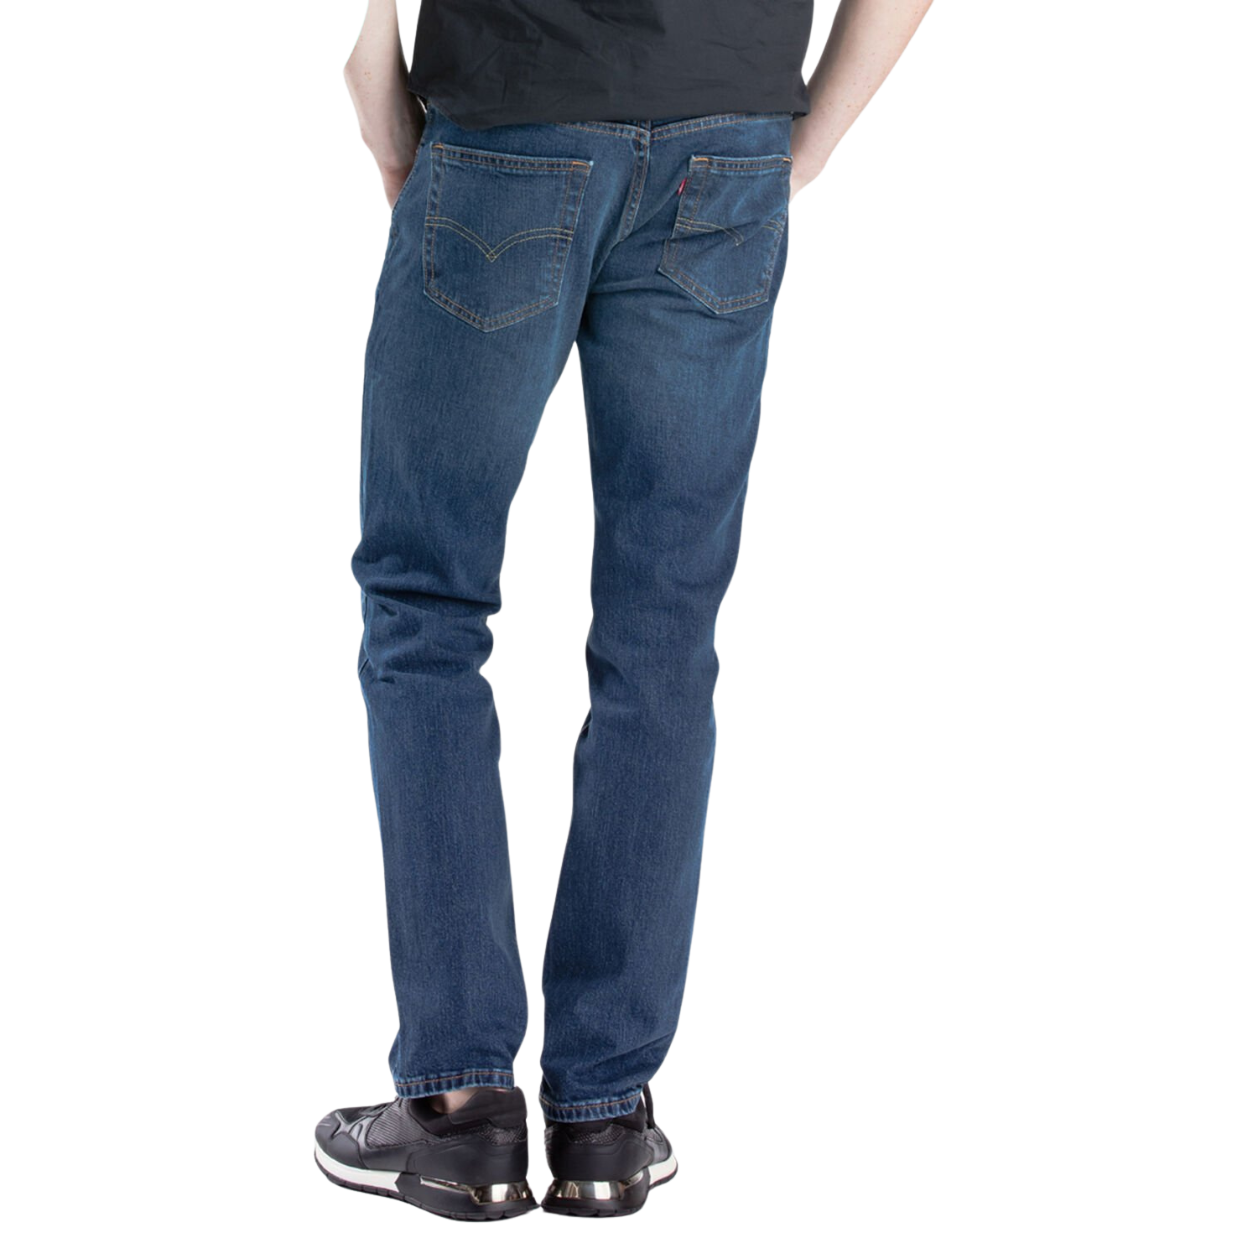 Levis® 511 Slim Fit Jean Mens Jeans by Levis | The Bloke Shop